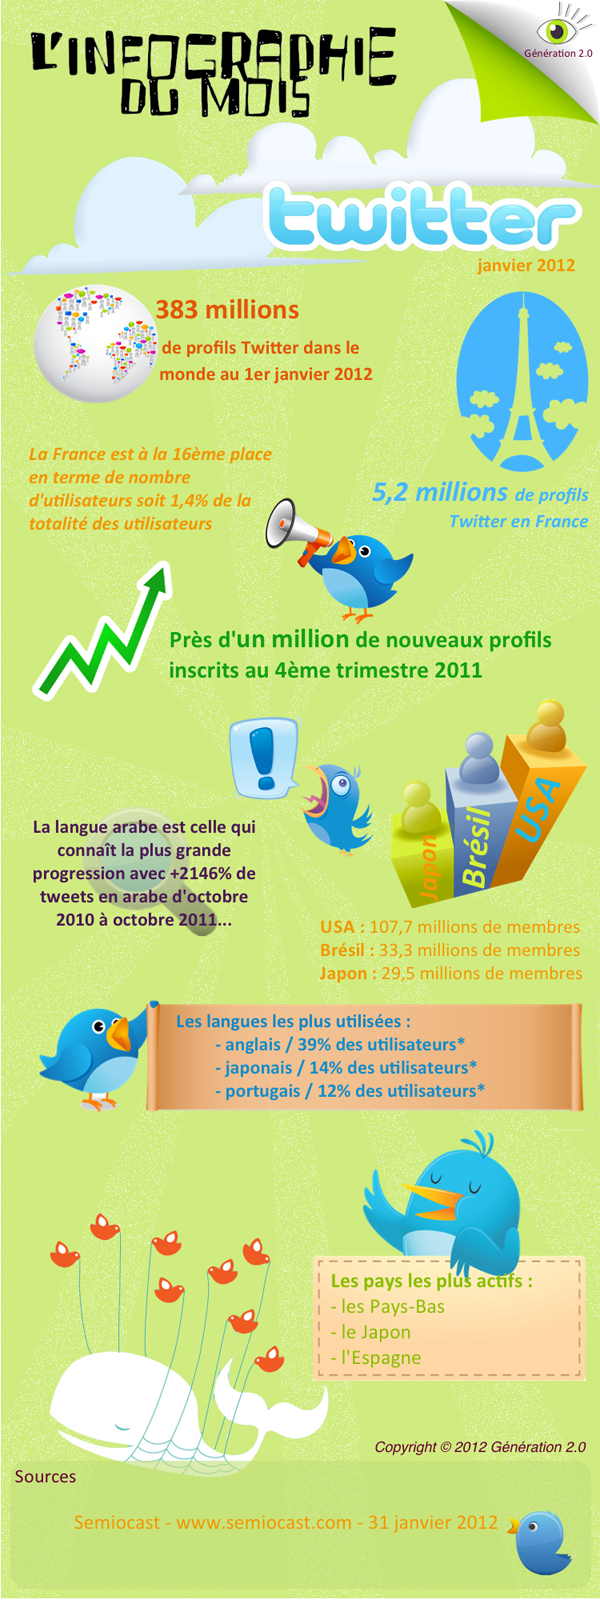 [Infographie] La France représente 1,4% des utilisateurs de Twitter